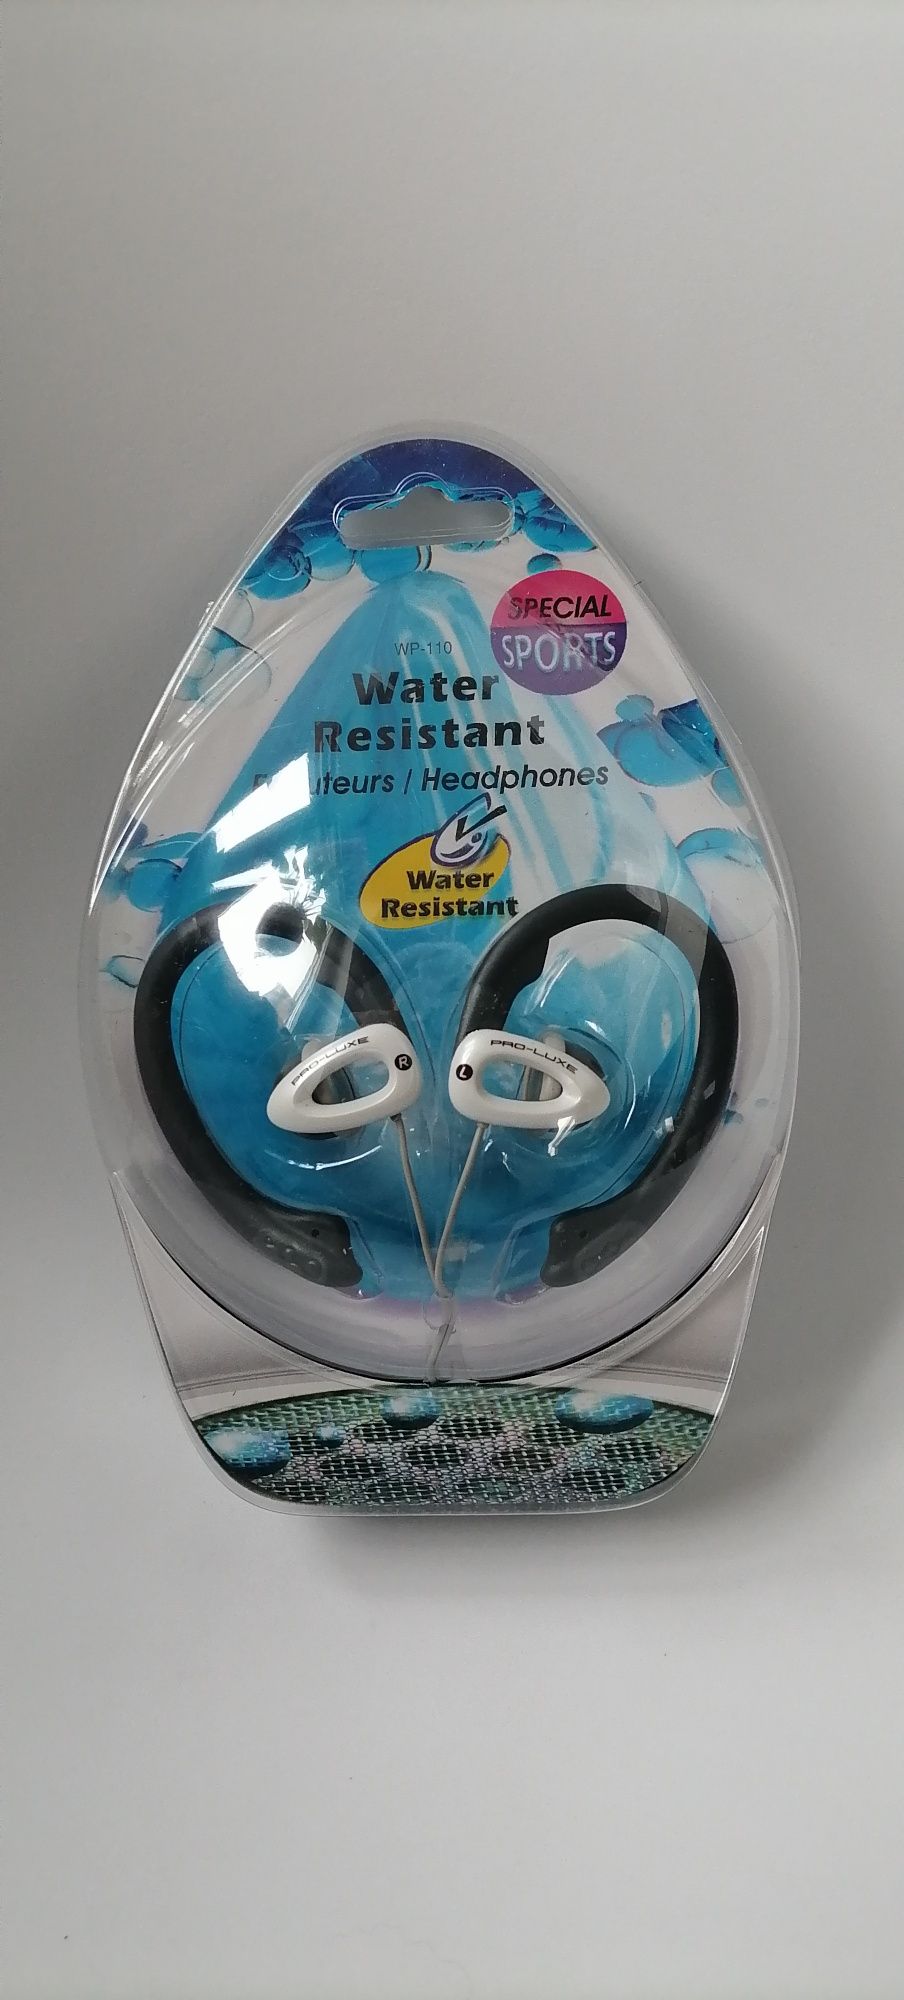 Słuchawki sportowe water resistant ergonomiczne  jak za darmo